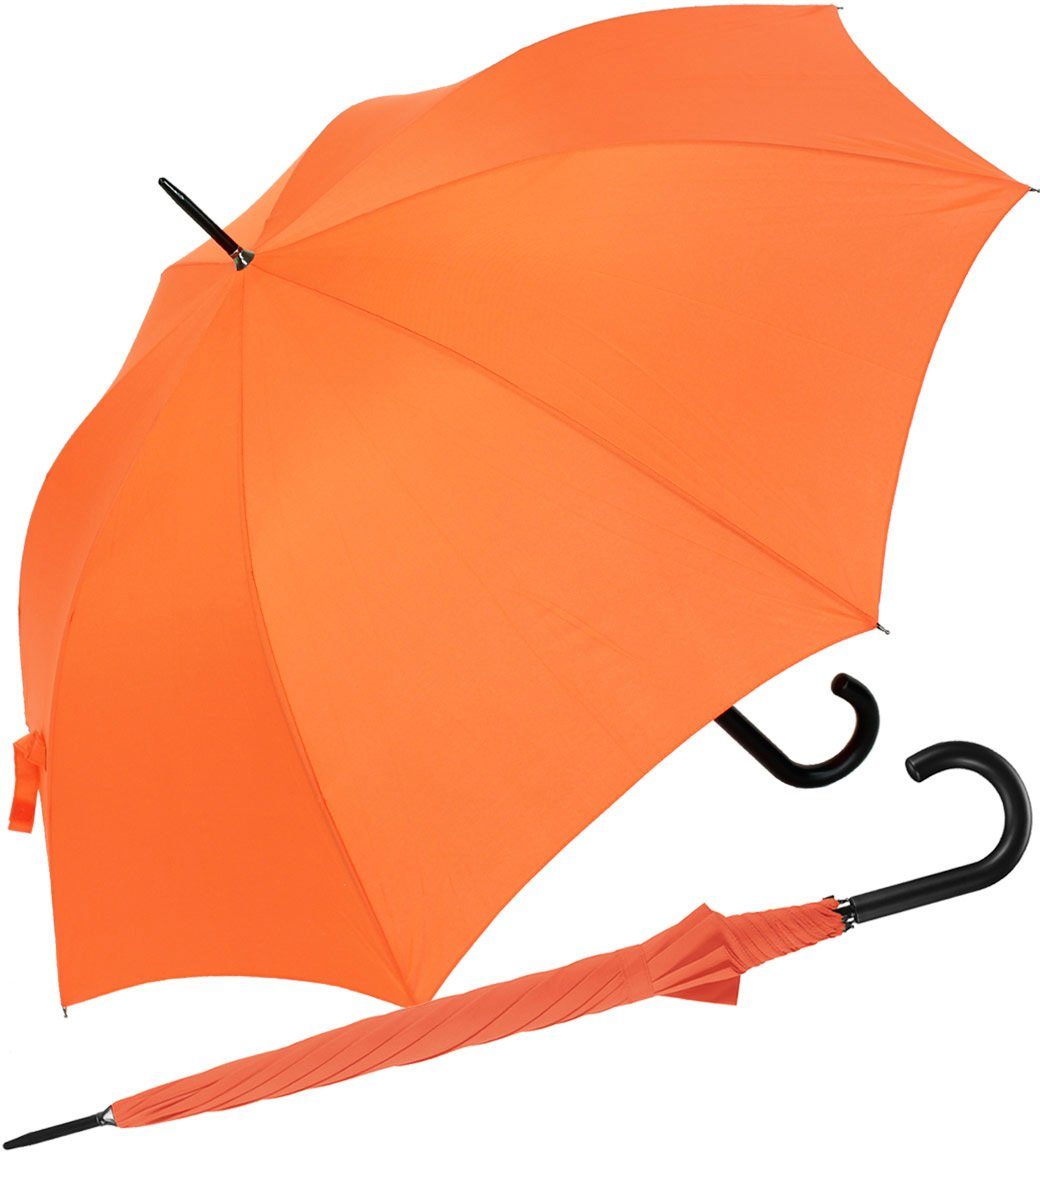 RS-Versand Langregenschirm großer stabiler Regenschirm mit Auf-Automatik, für Damen und Herren in vielen modischen Farben orange